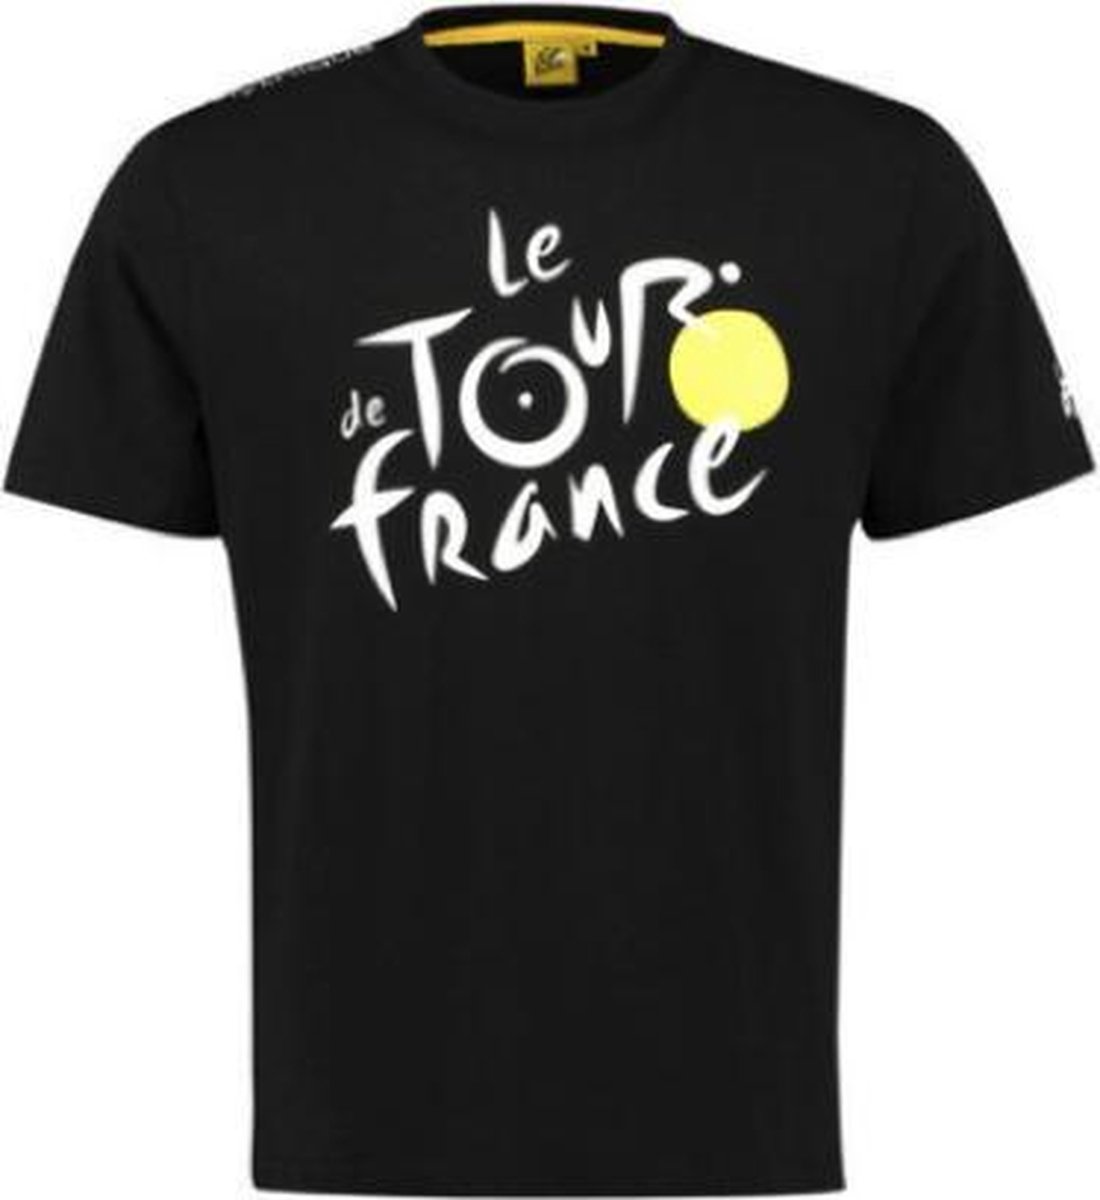 Tour de France - Officiële T-shirt - Zwart - Maat S